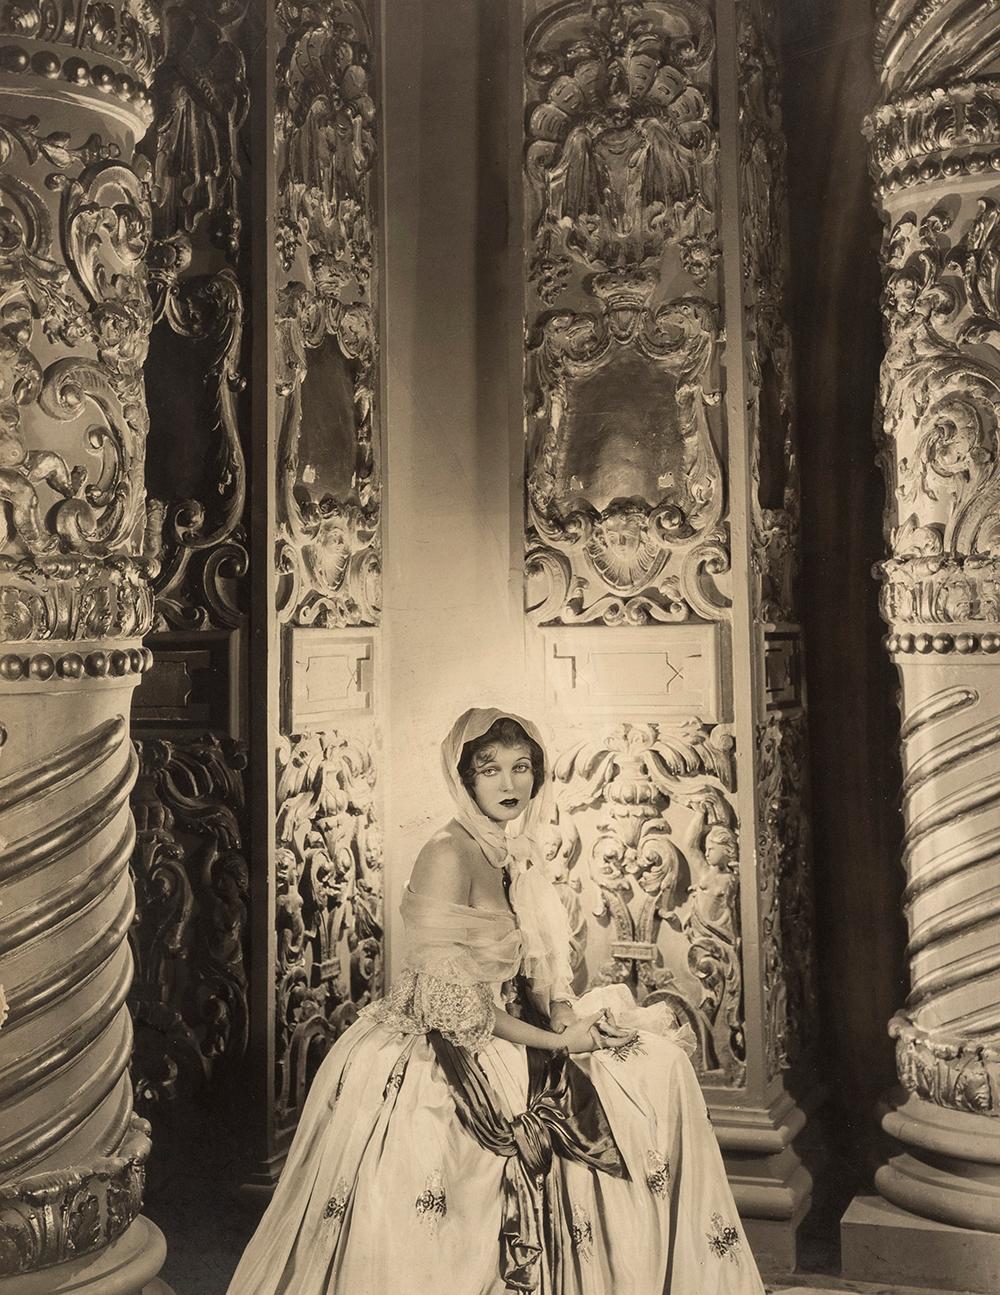 Corinne Griffith, 1930  - Cecil Beaton (photographie de portrait de mode)
Signature à l'encre rouge sur la monture
Inscription "Corinne Griffith" d'une main inconnue et cachet du studio Cecil Beaton de Sotheby's au dos du support
Tirage à la